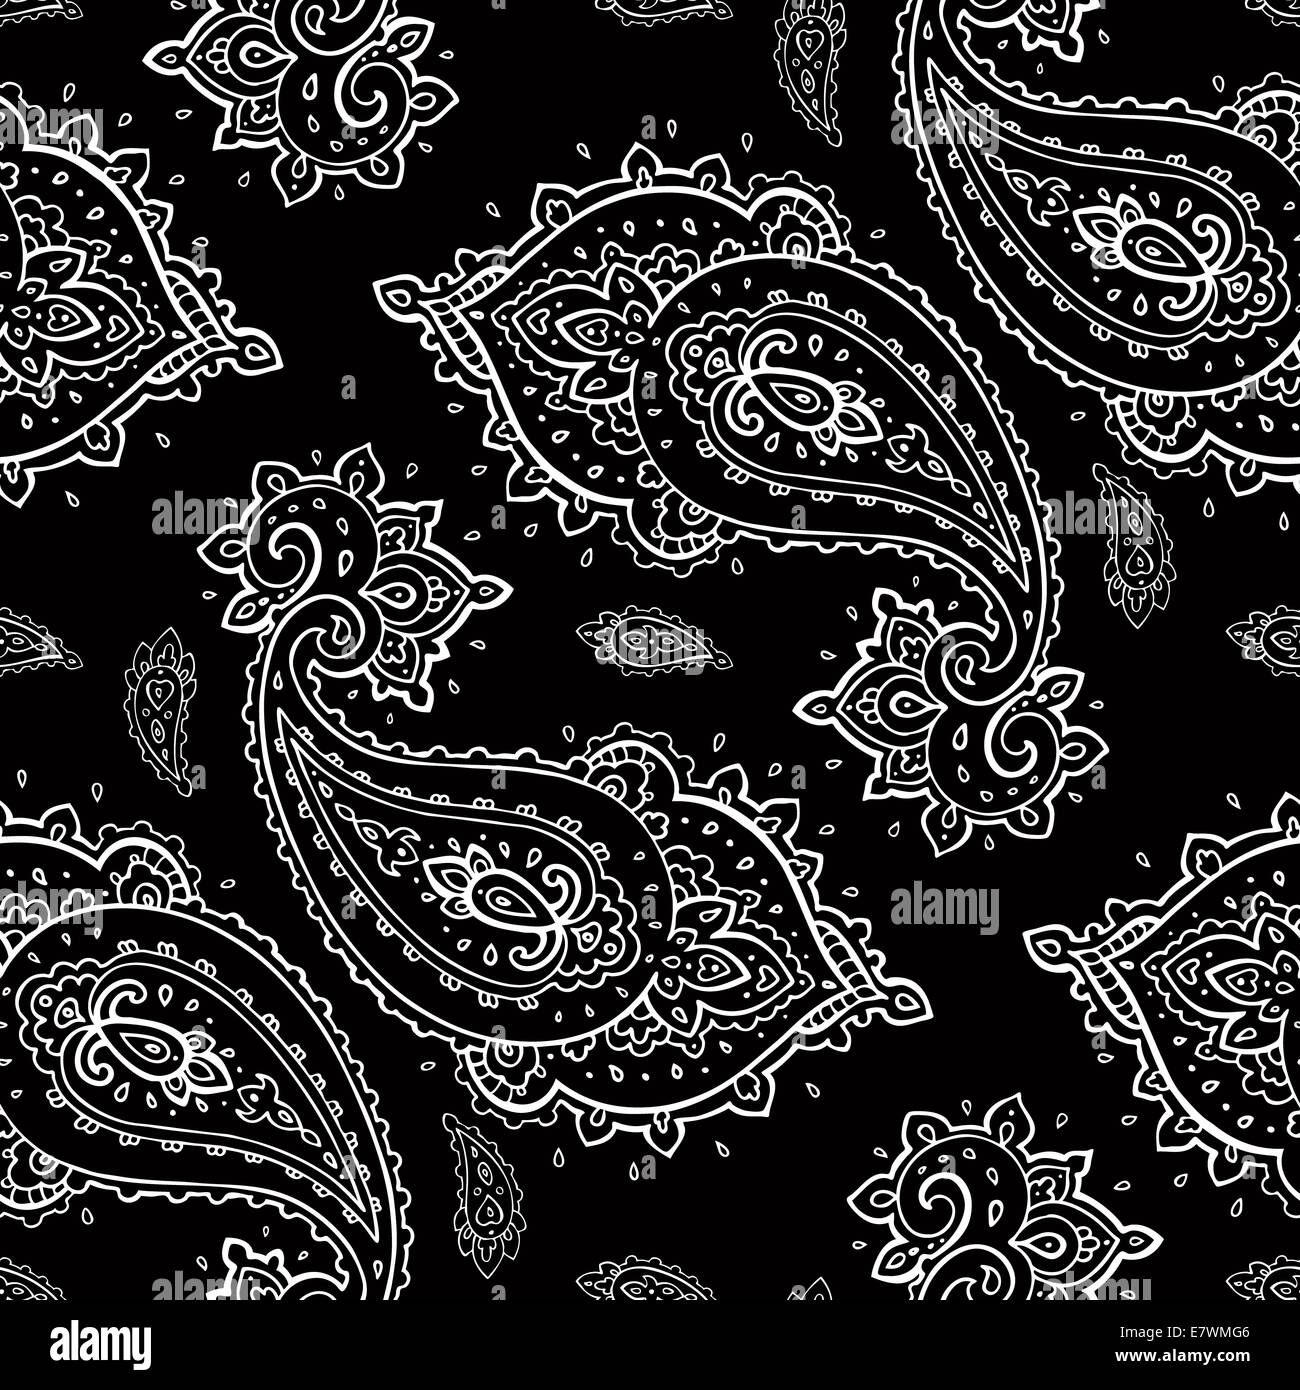 Seamless Paisley pattern. Stock Photo